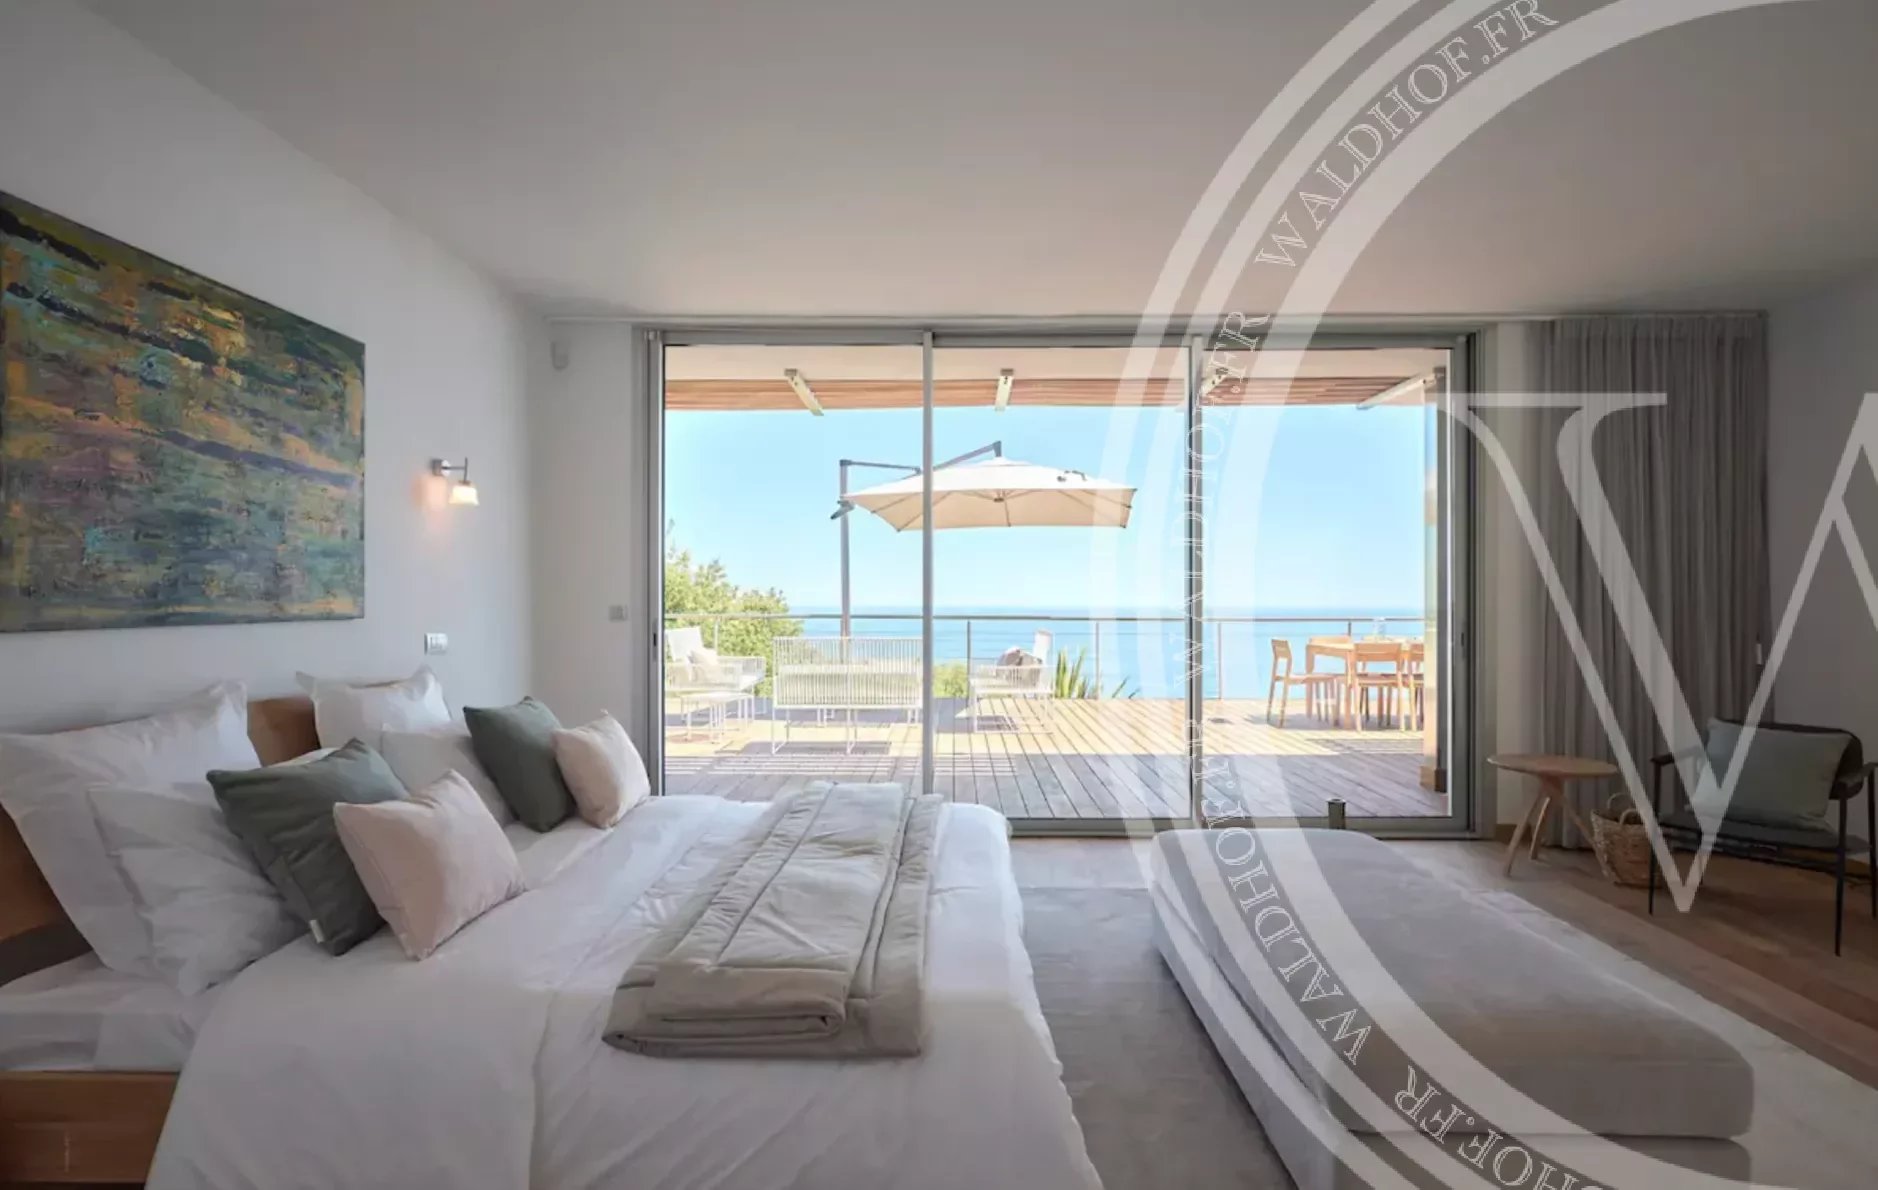 5 bedroom Villa with rooftop pool, Roquebrune Cap Martin